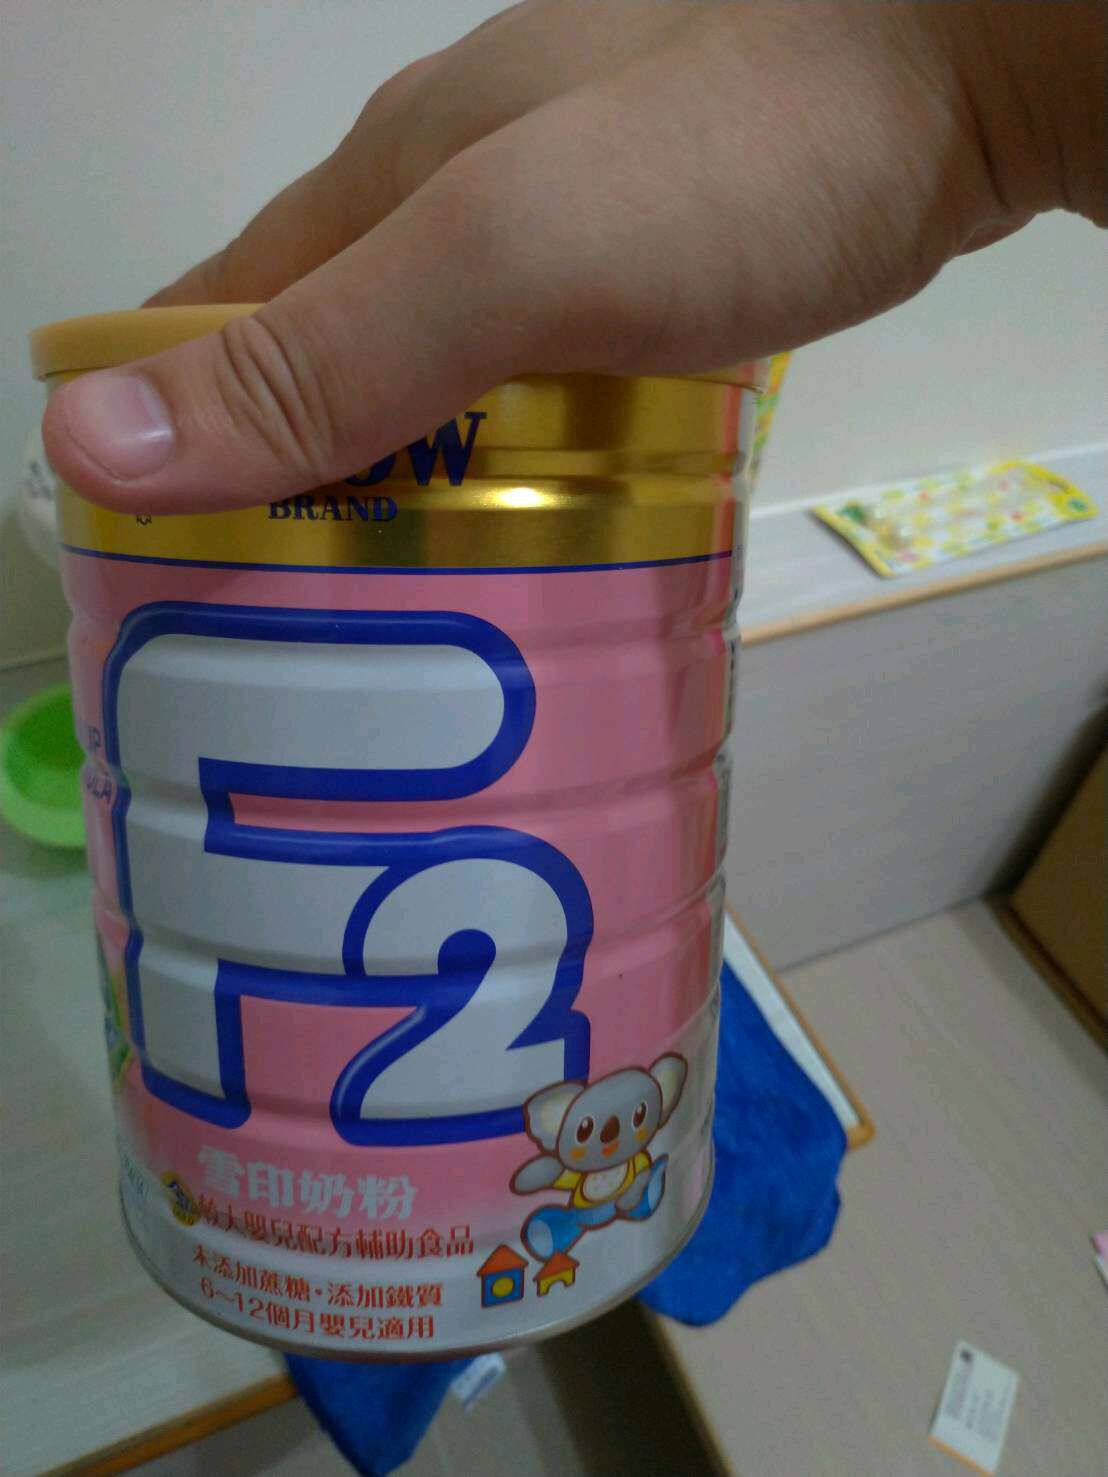 售雪印F2奶粉6-12個月寶寶試用